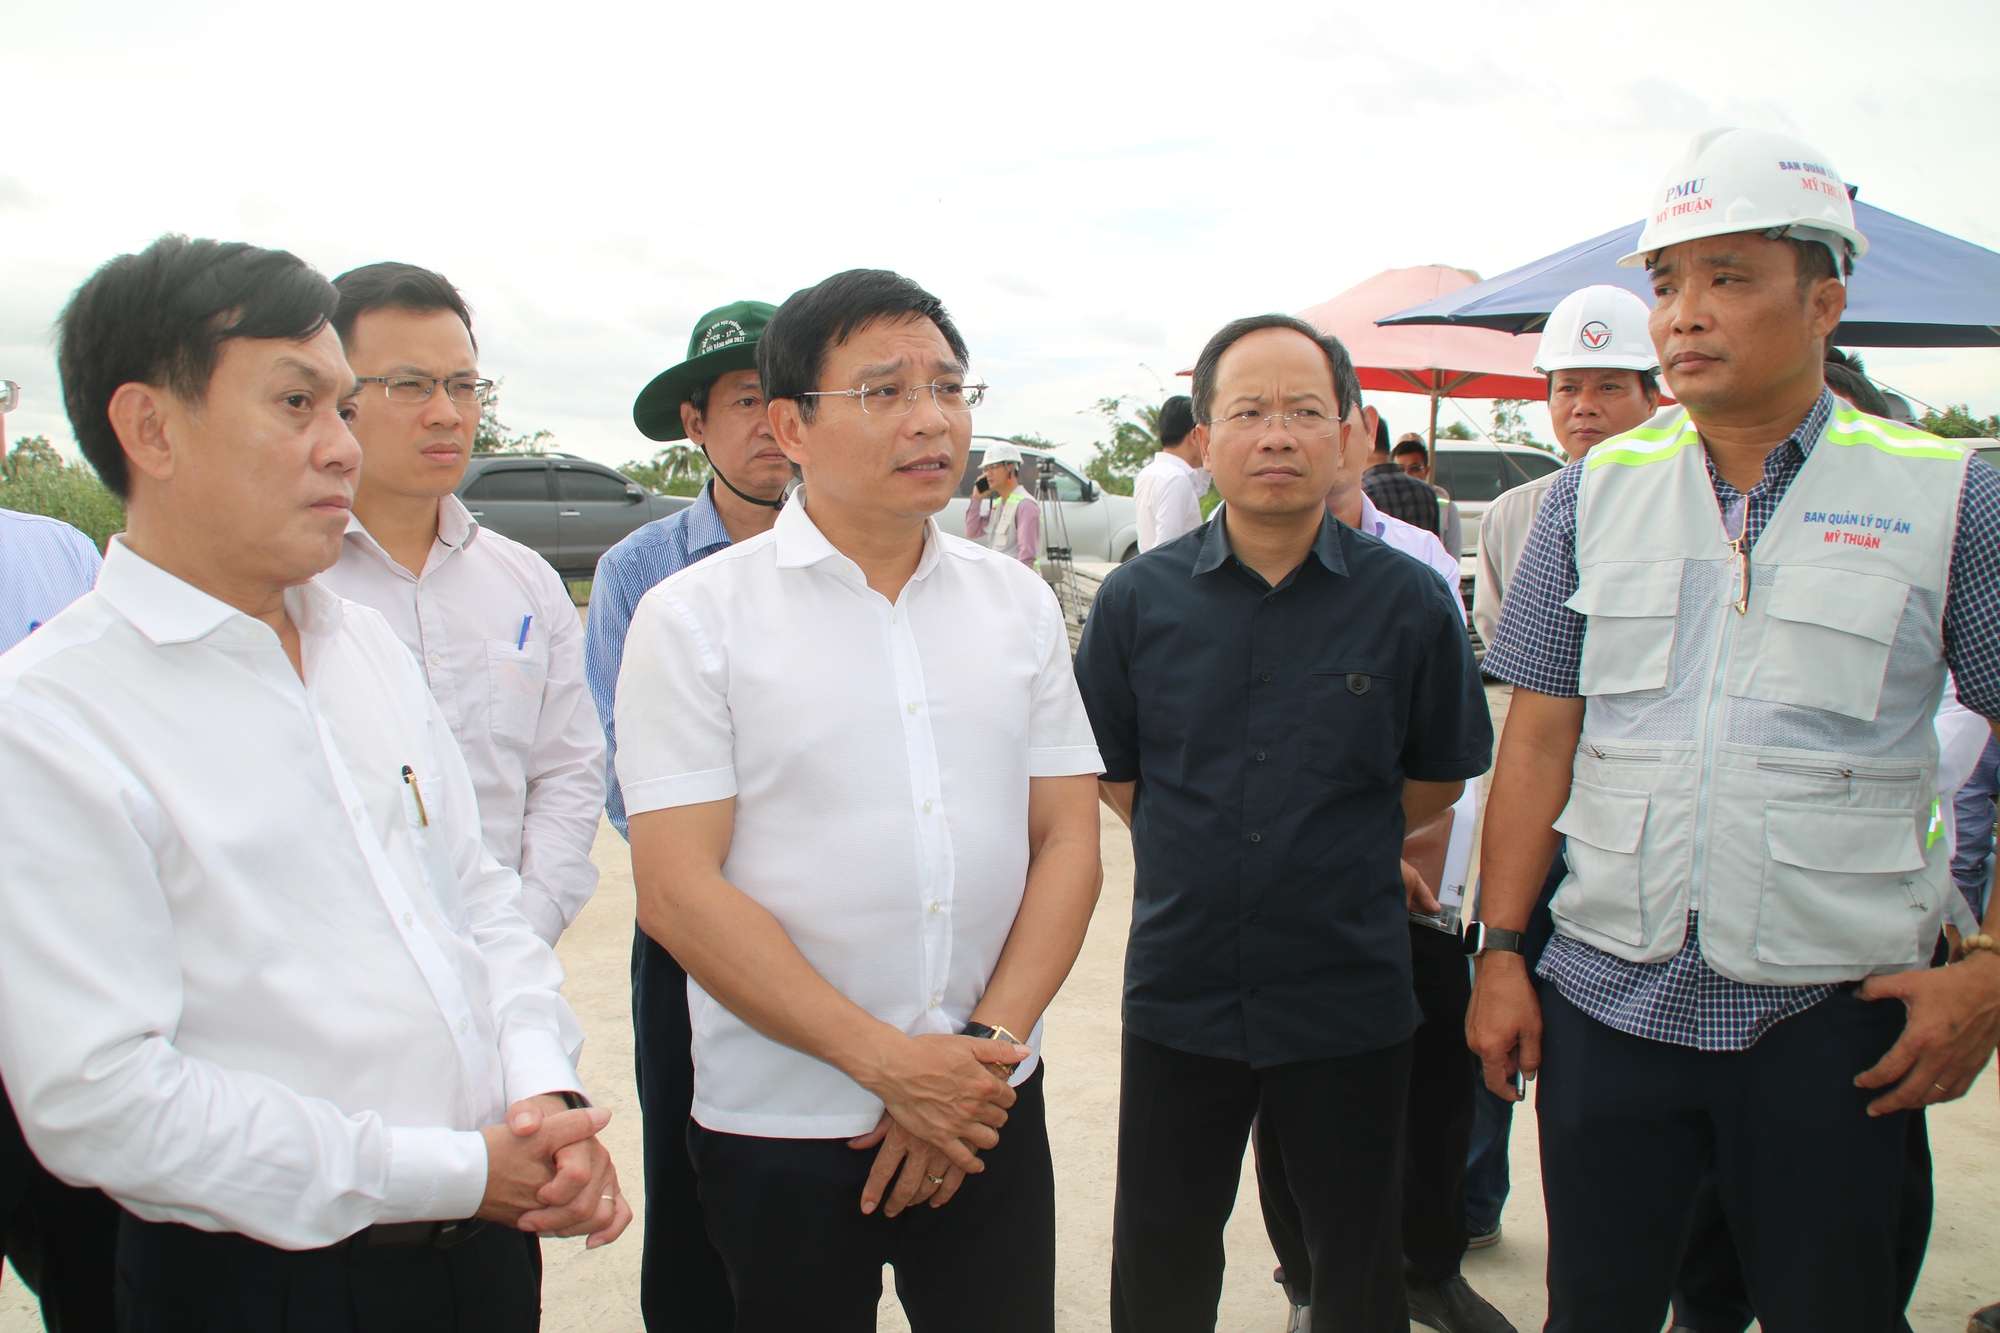 Bộ trưởng Nguyễn Văn Thắng: Ưu tiên làm đường công vụ để thi công cầu trên dự án cao tốc - Ảnh 4.